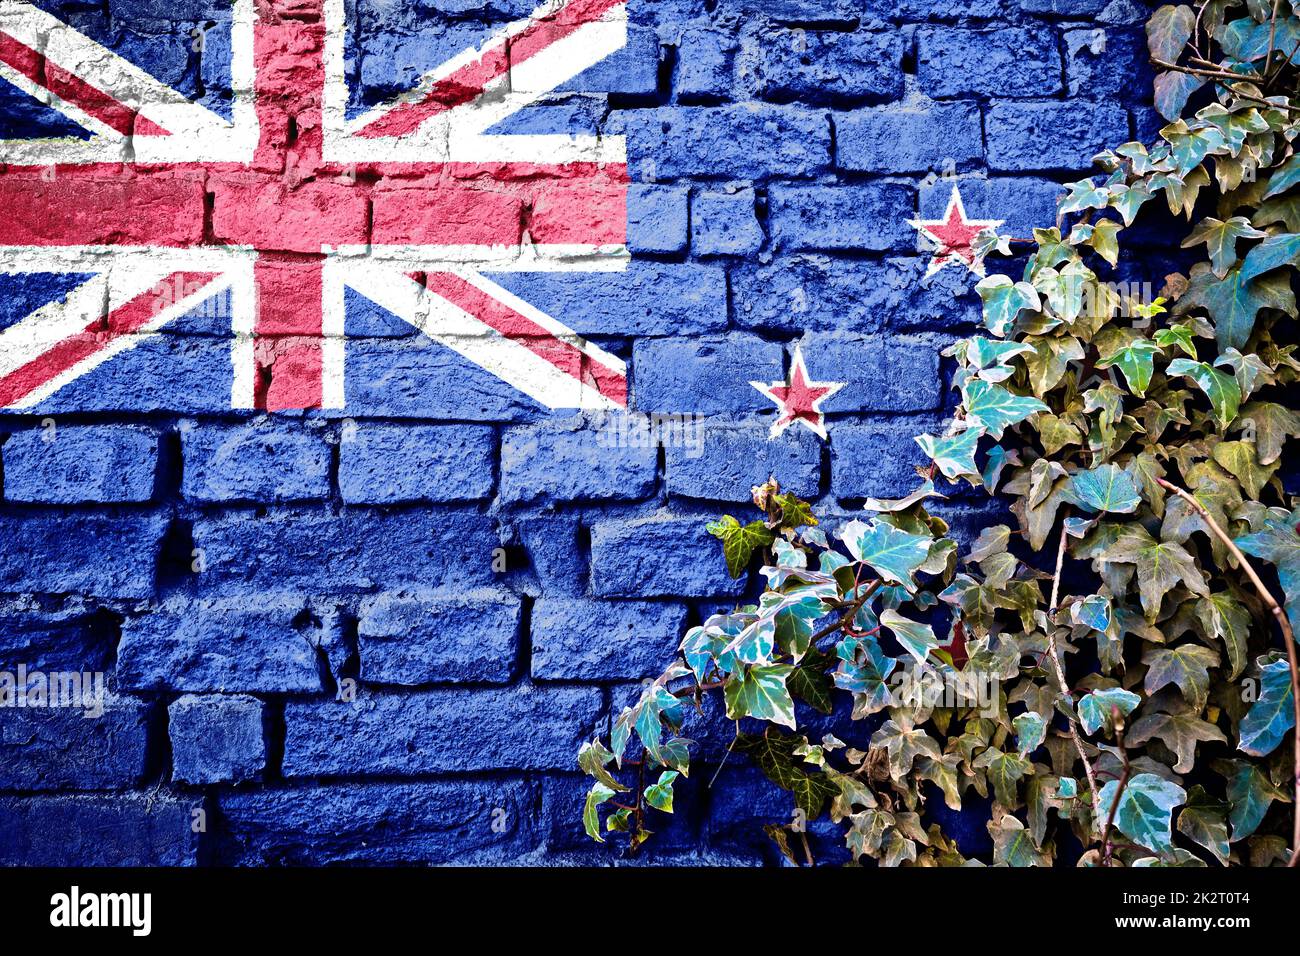 Nuova bandiera Zeland grunge su muro di mattoni con edera pianta Foto Stock